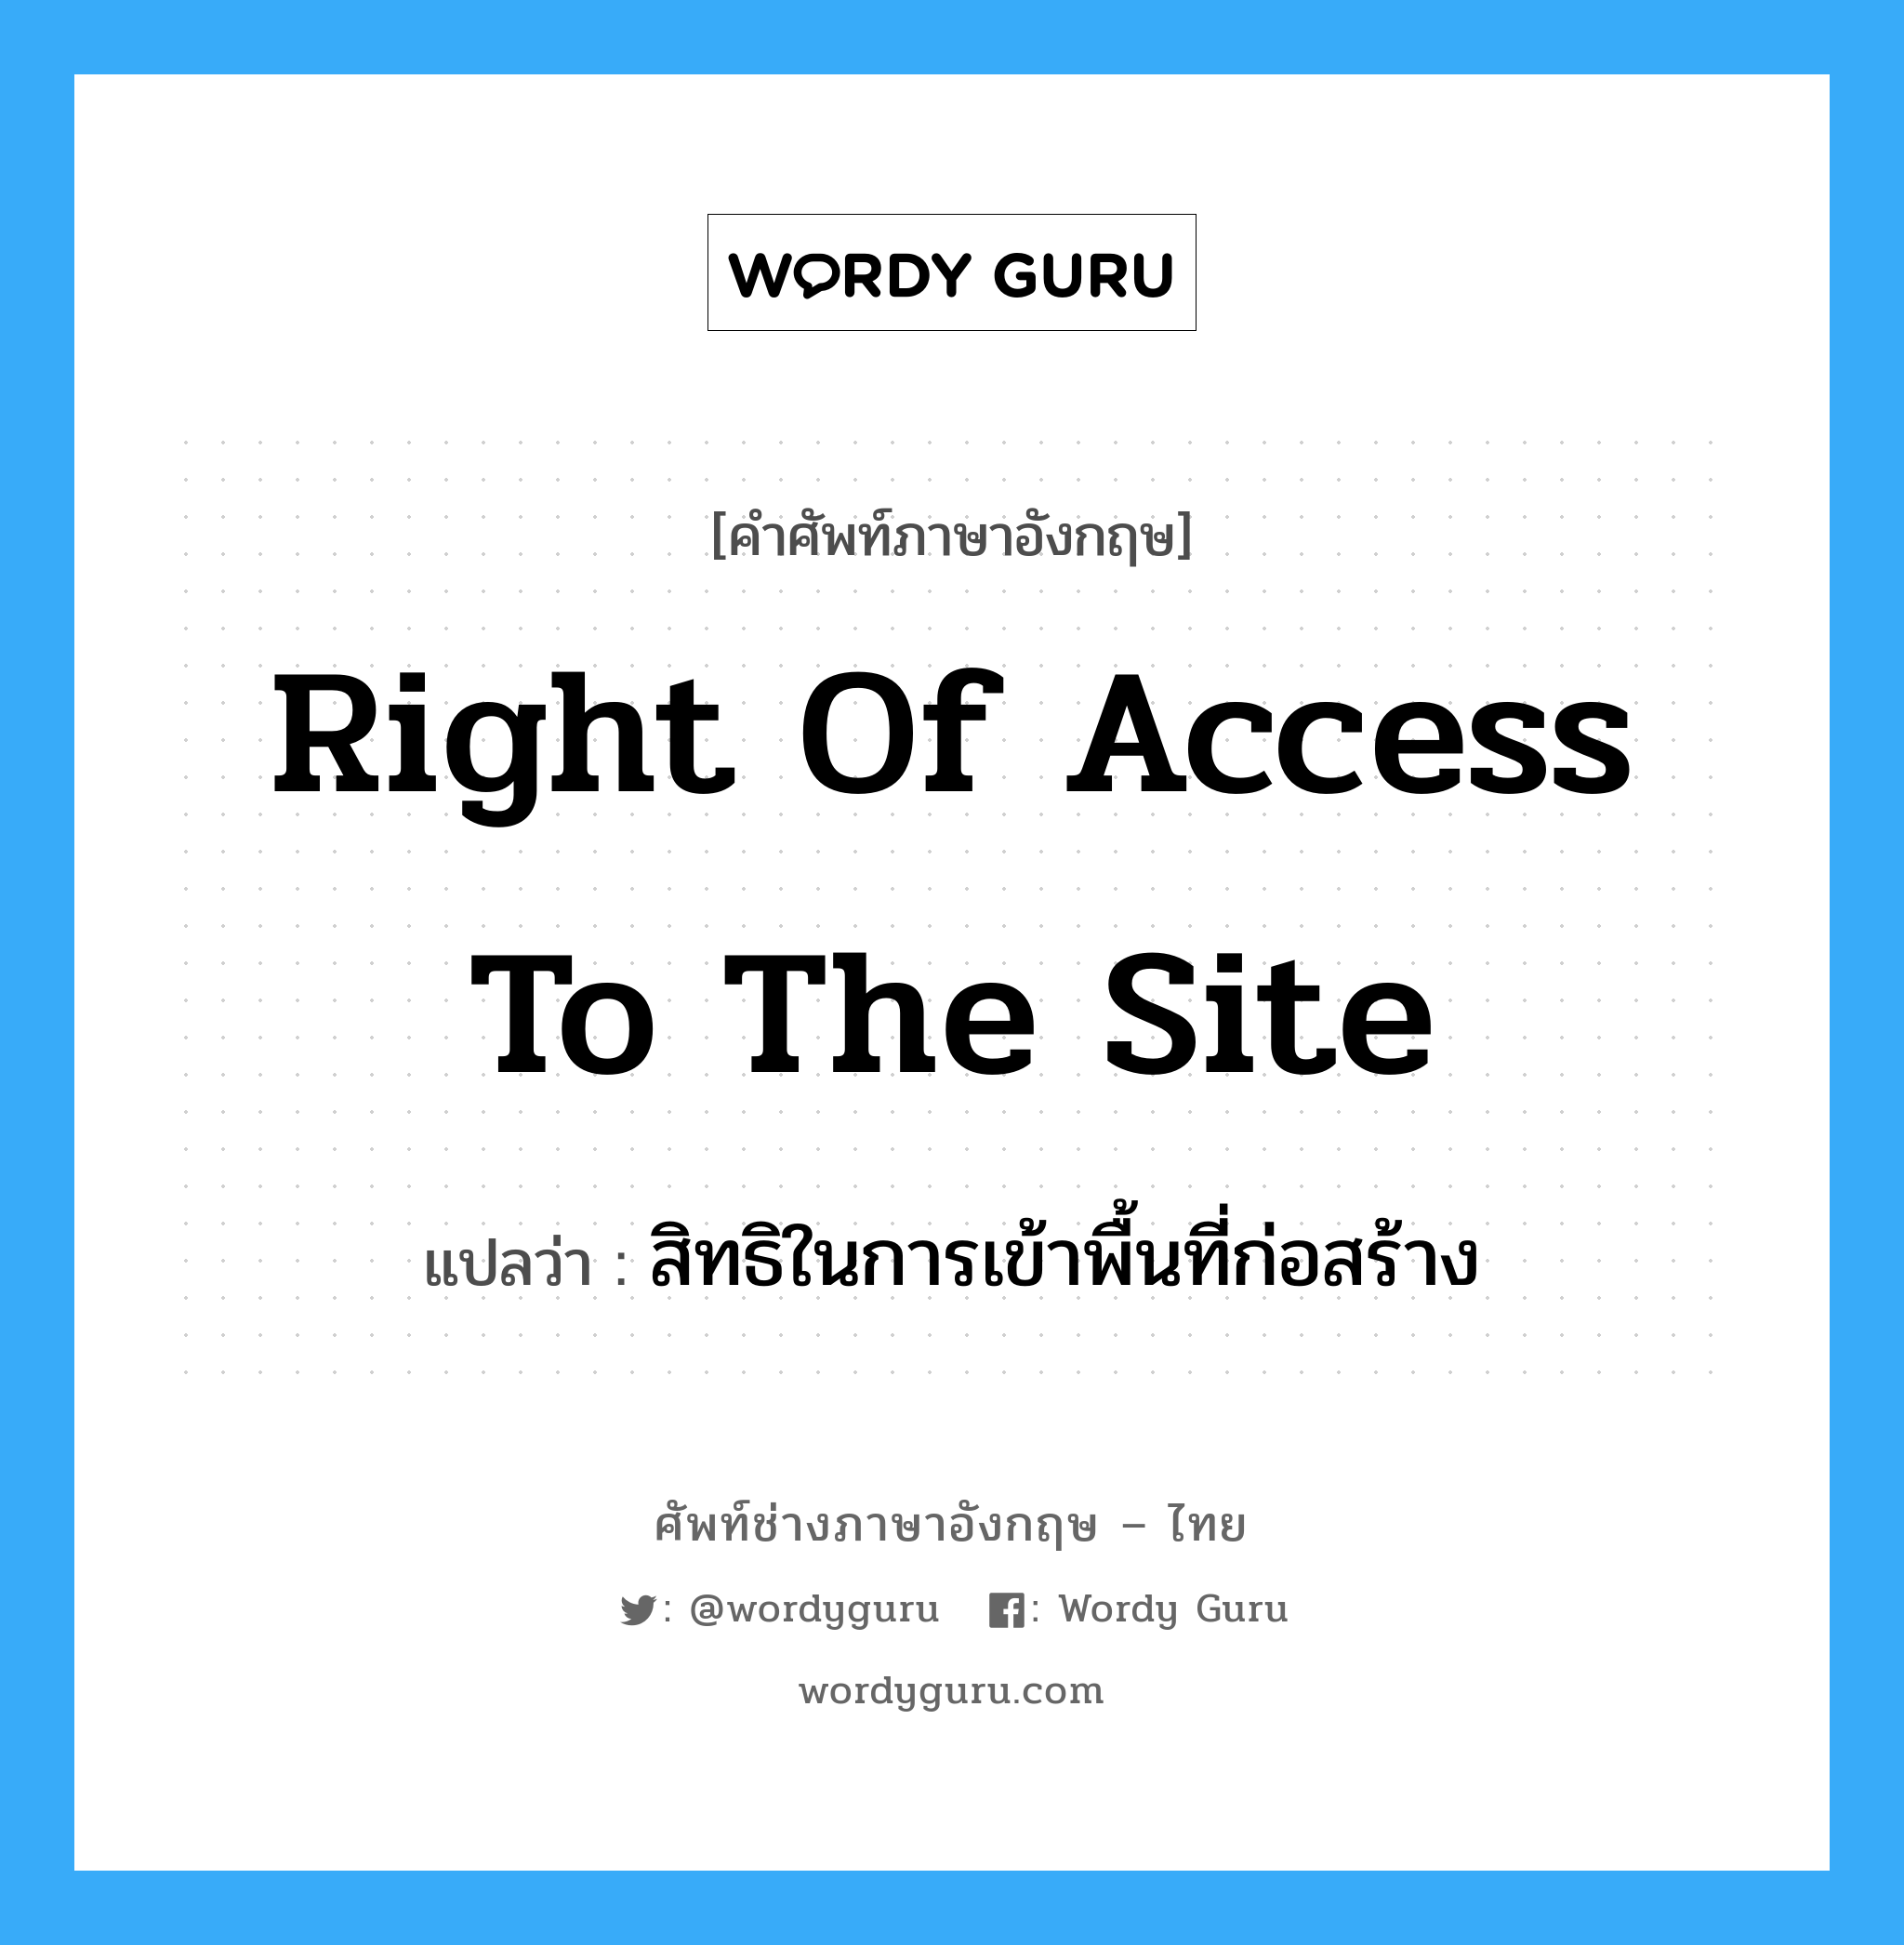 สิทธิในการเข้าพื้นที่ก่อสร้าง ภาษาอังกฤษ?, คำศัพท์ช่างภาษาอังกฤษ - ไทย สิทธิในการเข้าพื้นที่ก่อสร้าง คำศัพท์ภาษาอังกฤษ สิทธิในการเข้าพื้นที่ก่อสร้าง แปลว่า Right of Access to the Site